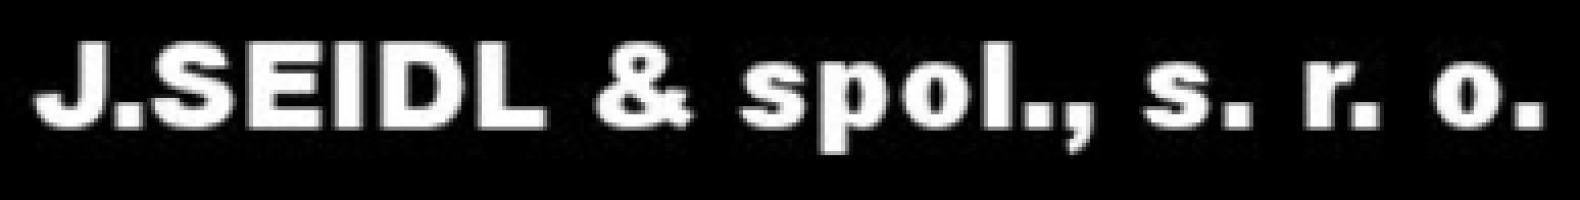 Logo firmy: J. Seidl a spol., s.r.o.